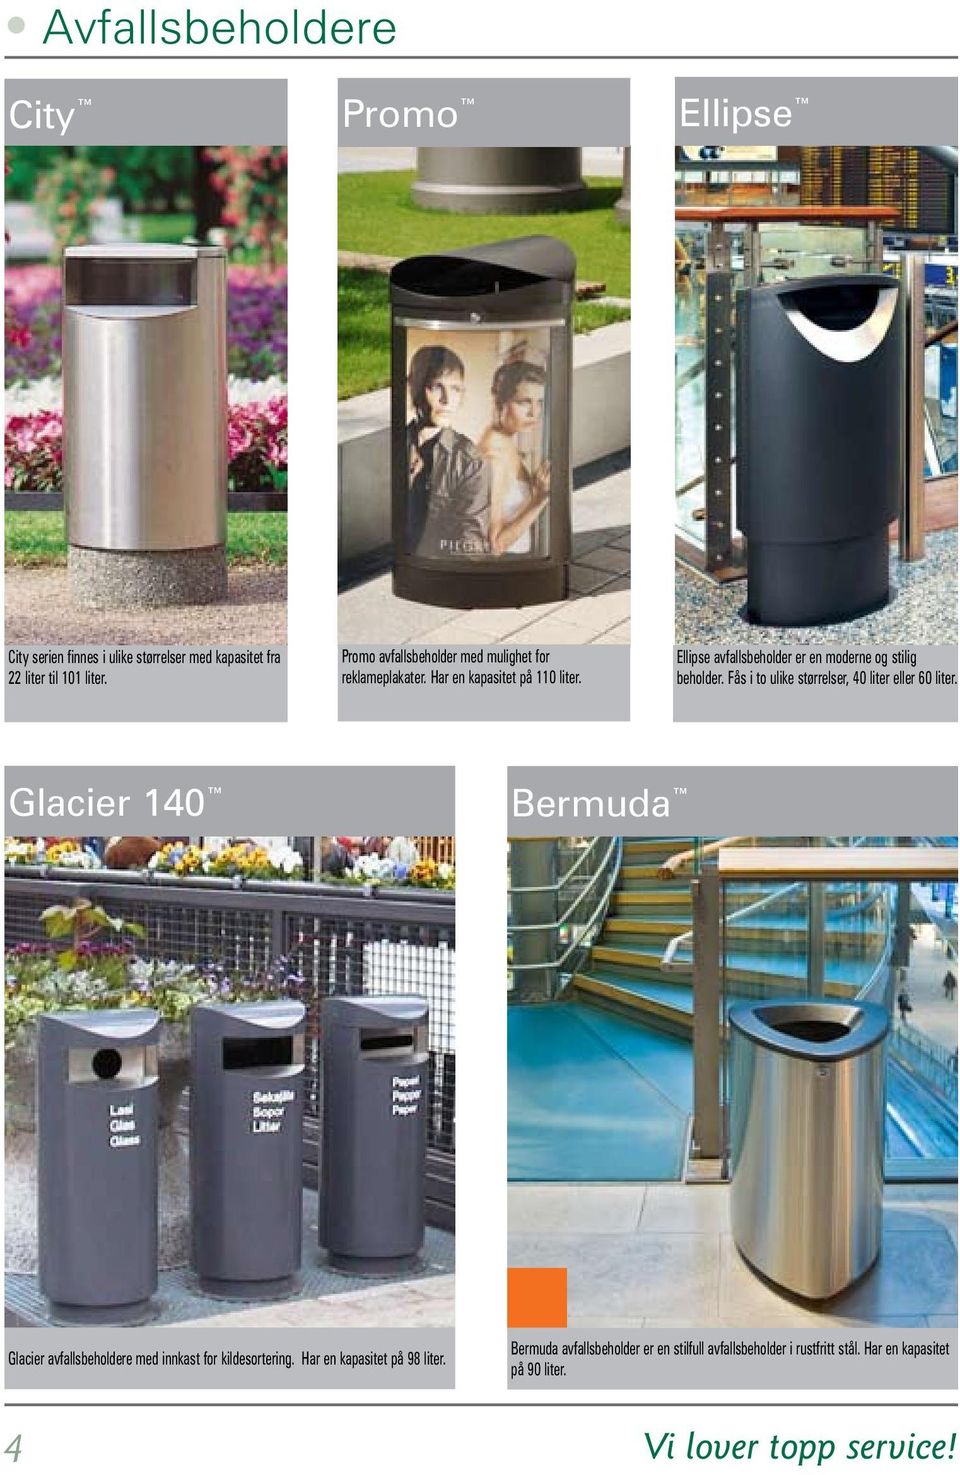 Ellipse avfallsbeholder er en moderne og stilig beholder. Fås i to ulike størrelser, 40 liter eller 60 liter.